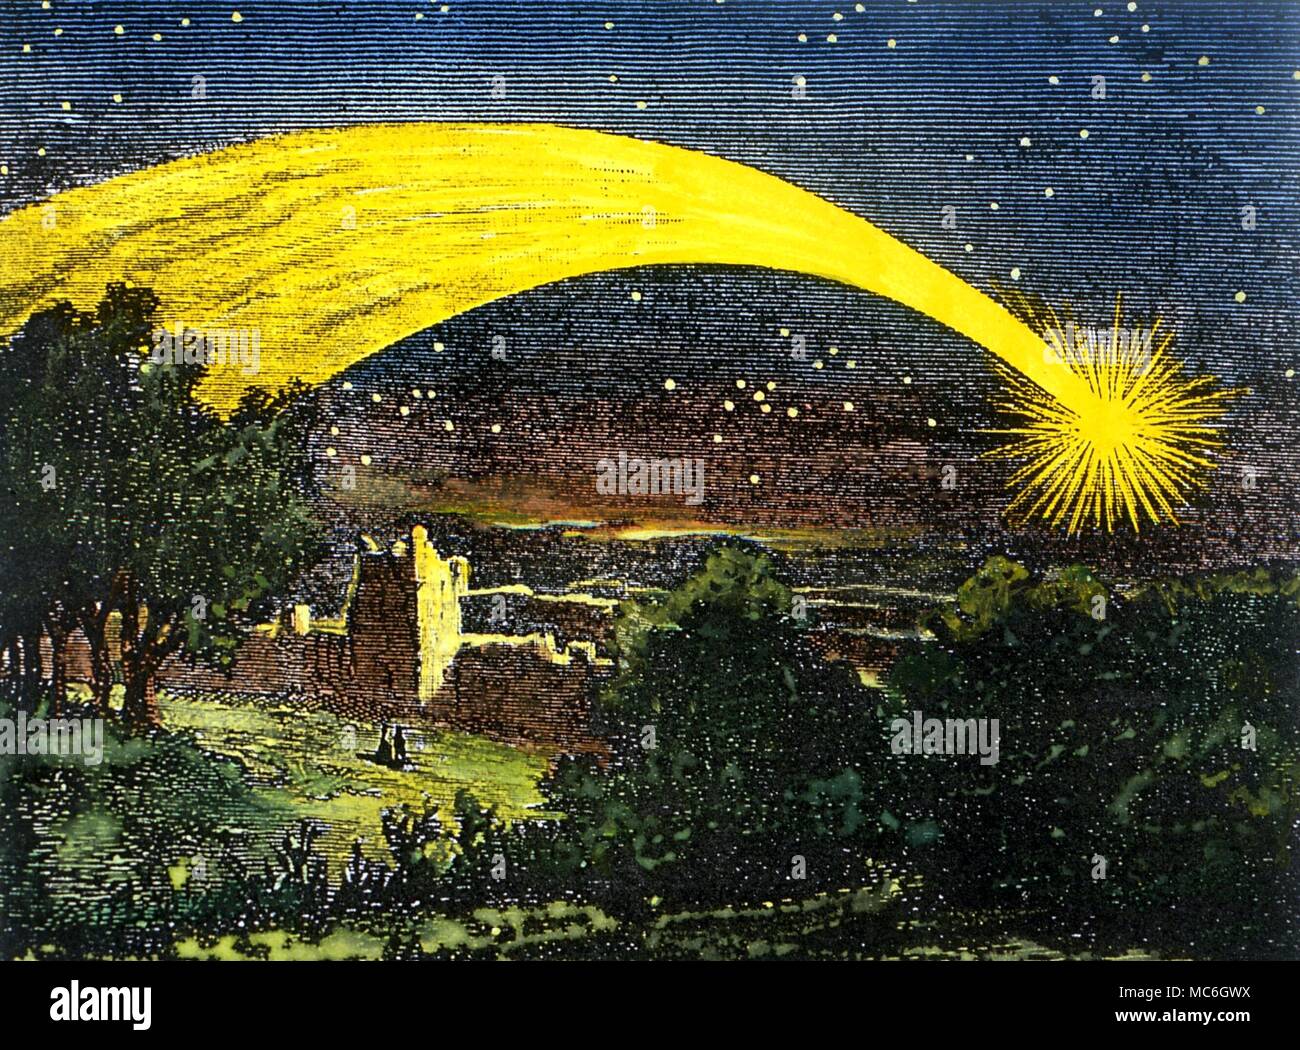 Astrologia - Meteor la presenza di striature su un romantico paesaggio gotico. Un tale meteor è considerato un presagio di catastrofe. Inizio xviii incisione Foto Stock